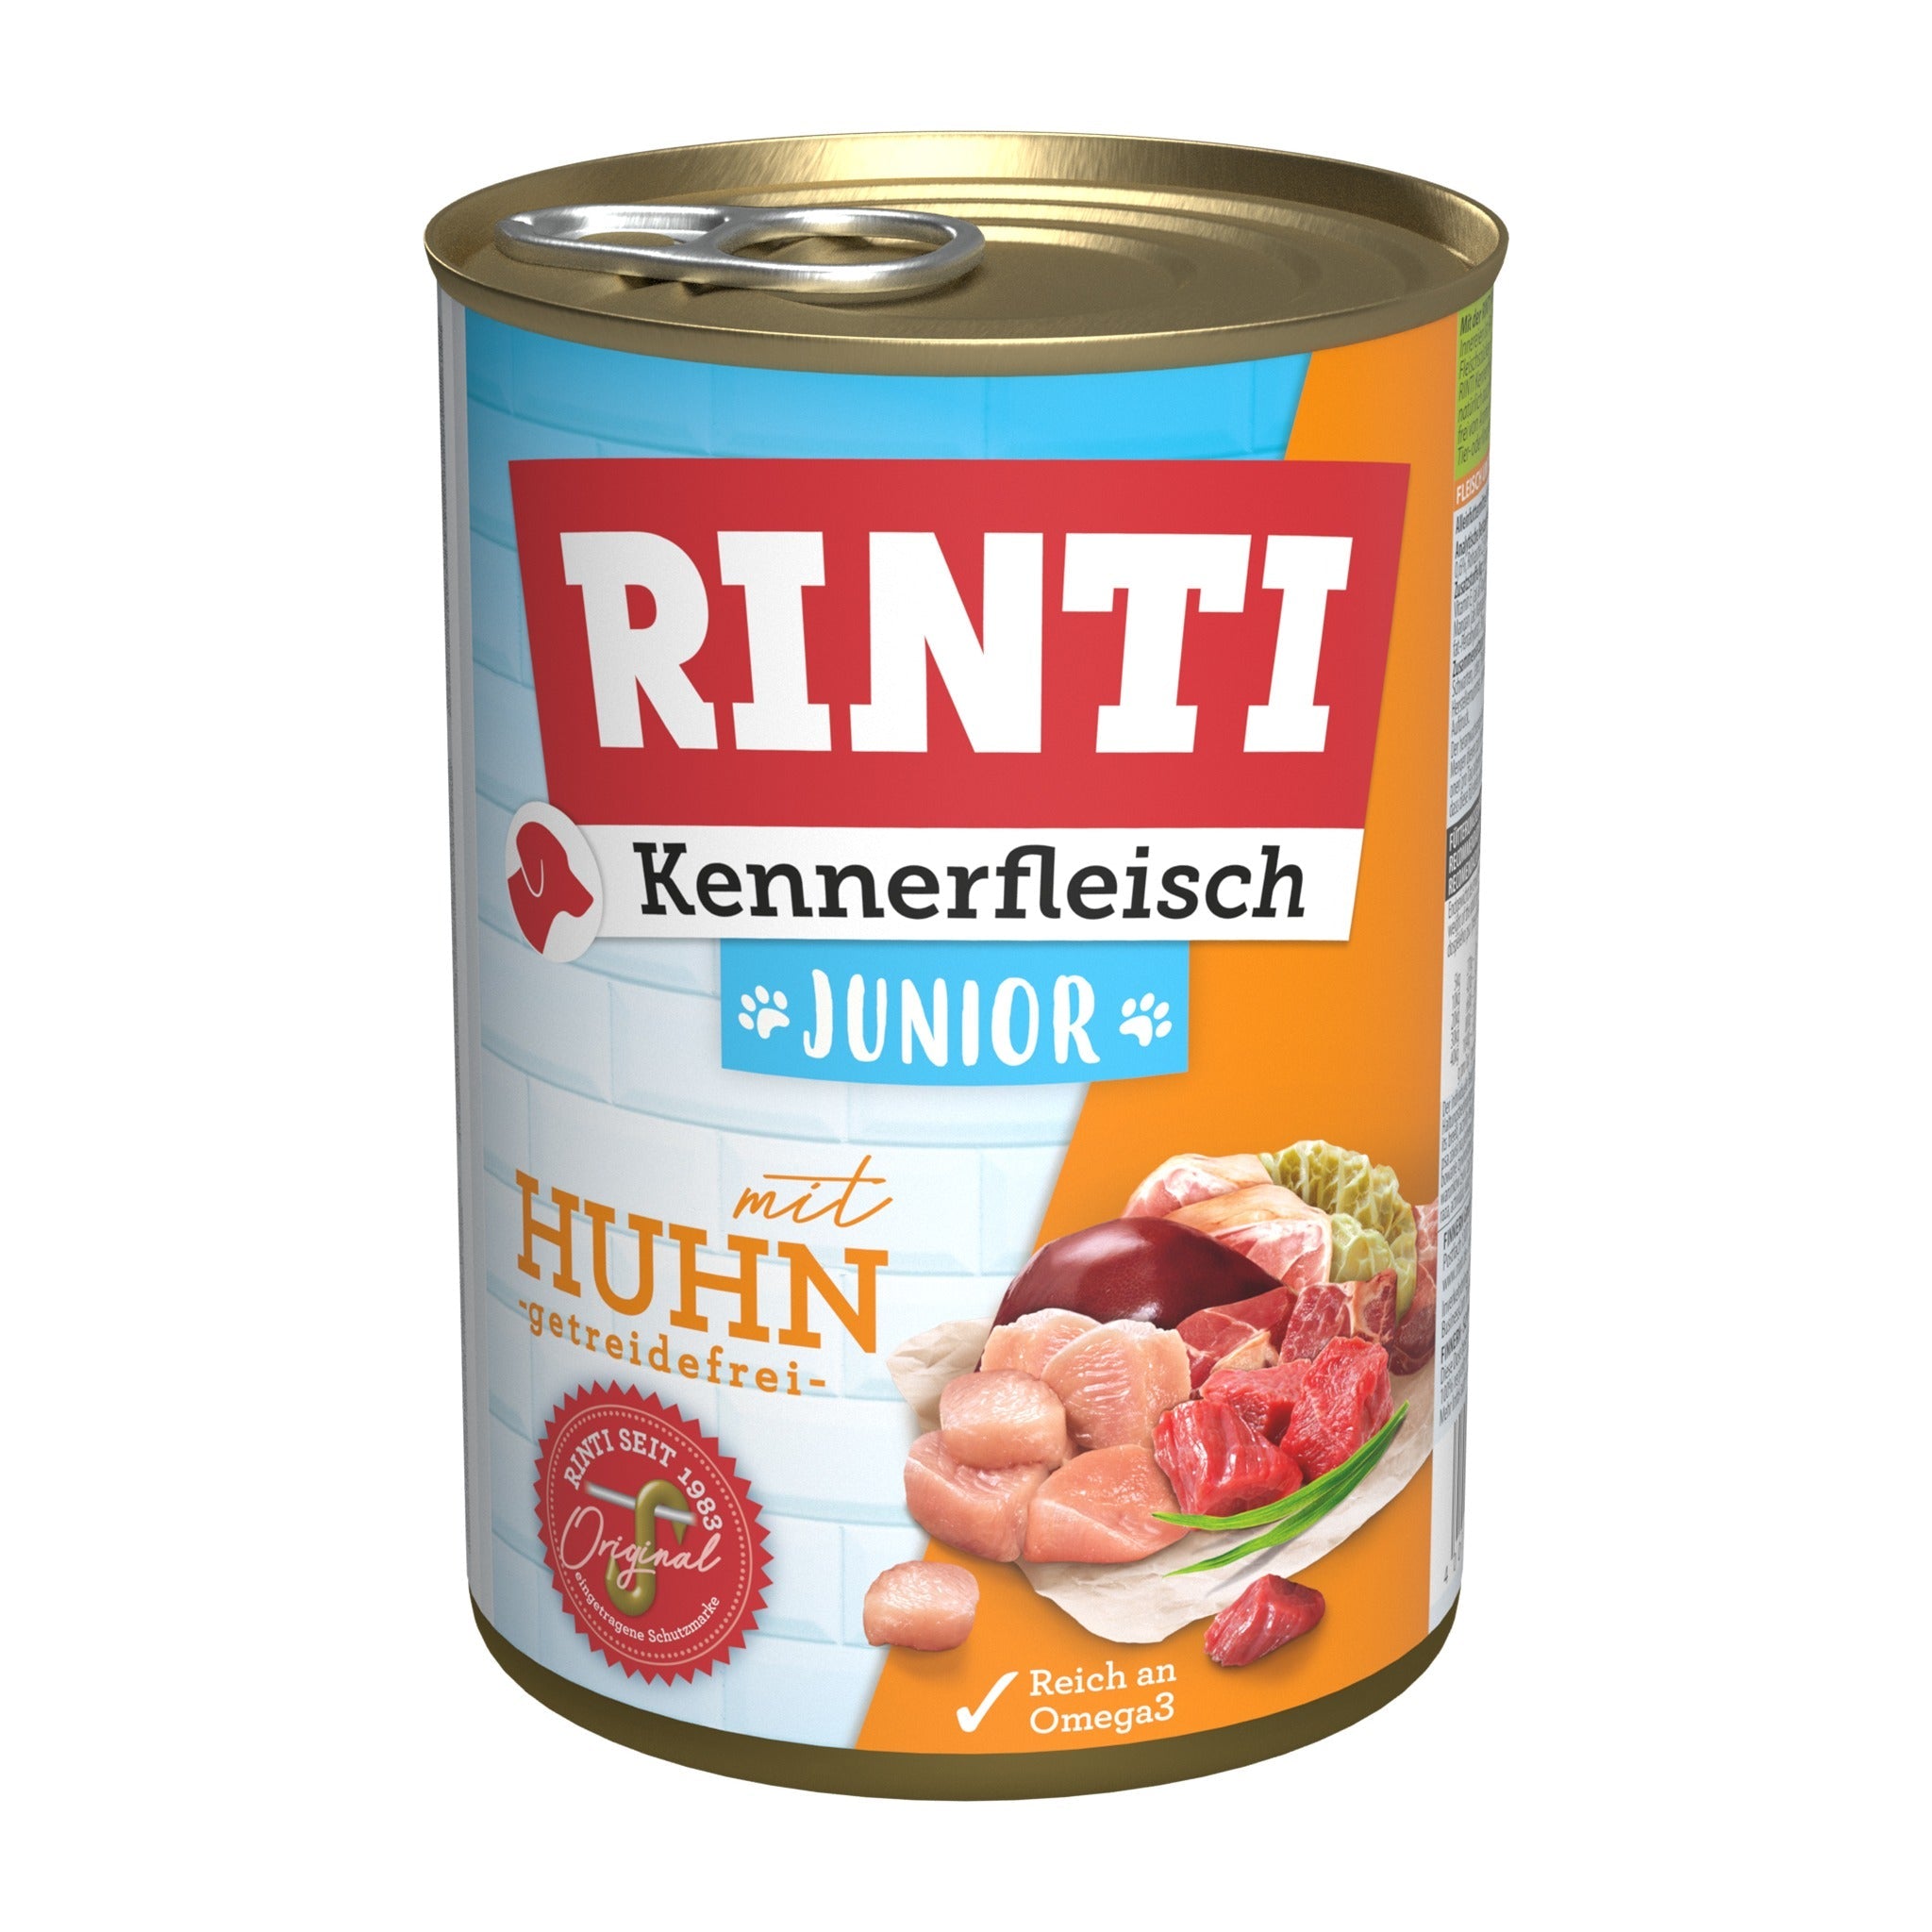 RINTI Dose, Kennerfleisch Junior mit Huhn - Woofshack